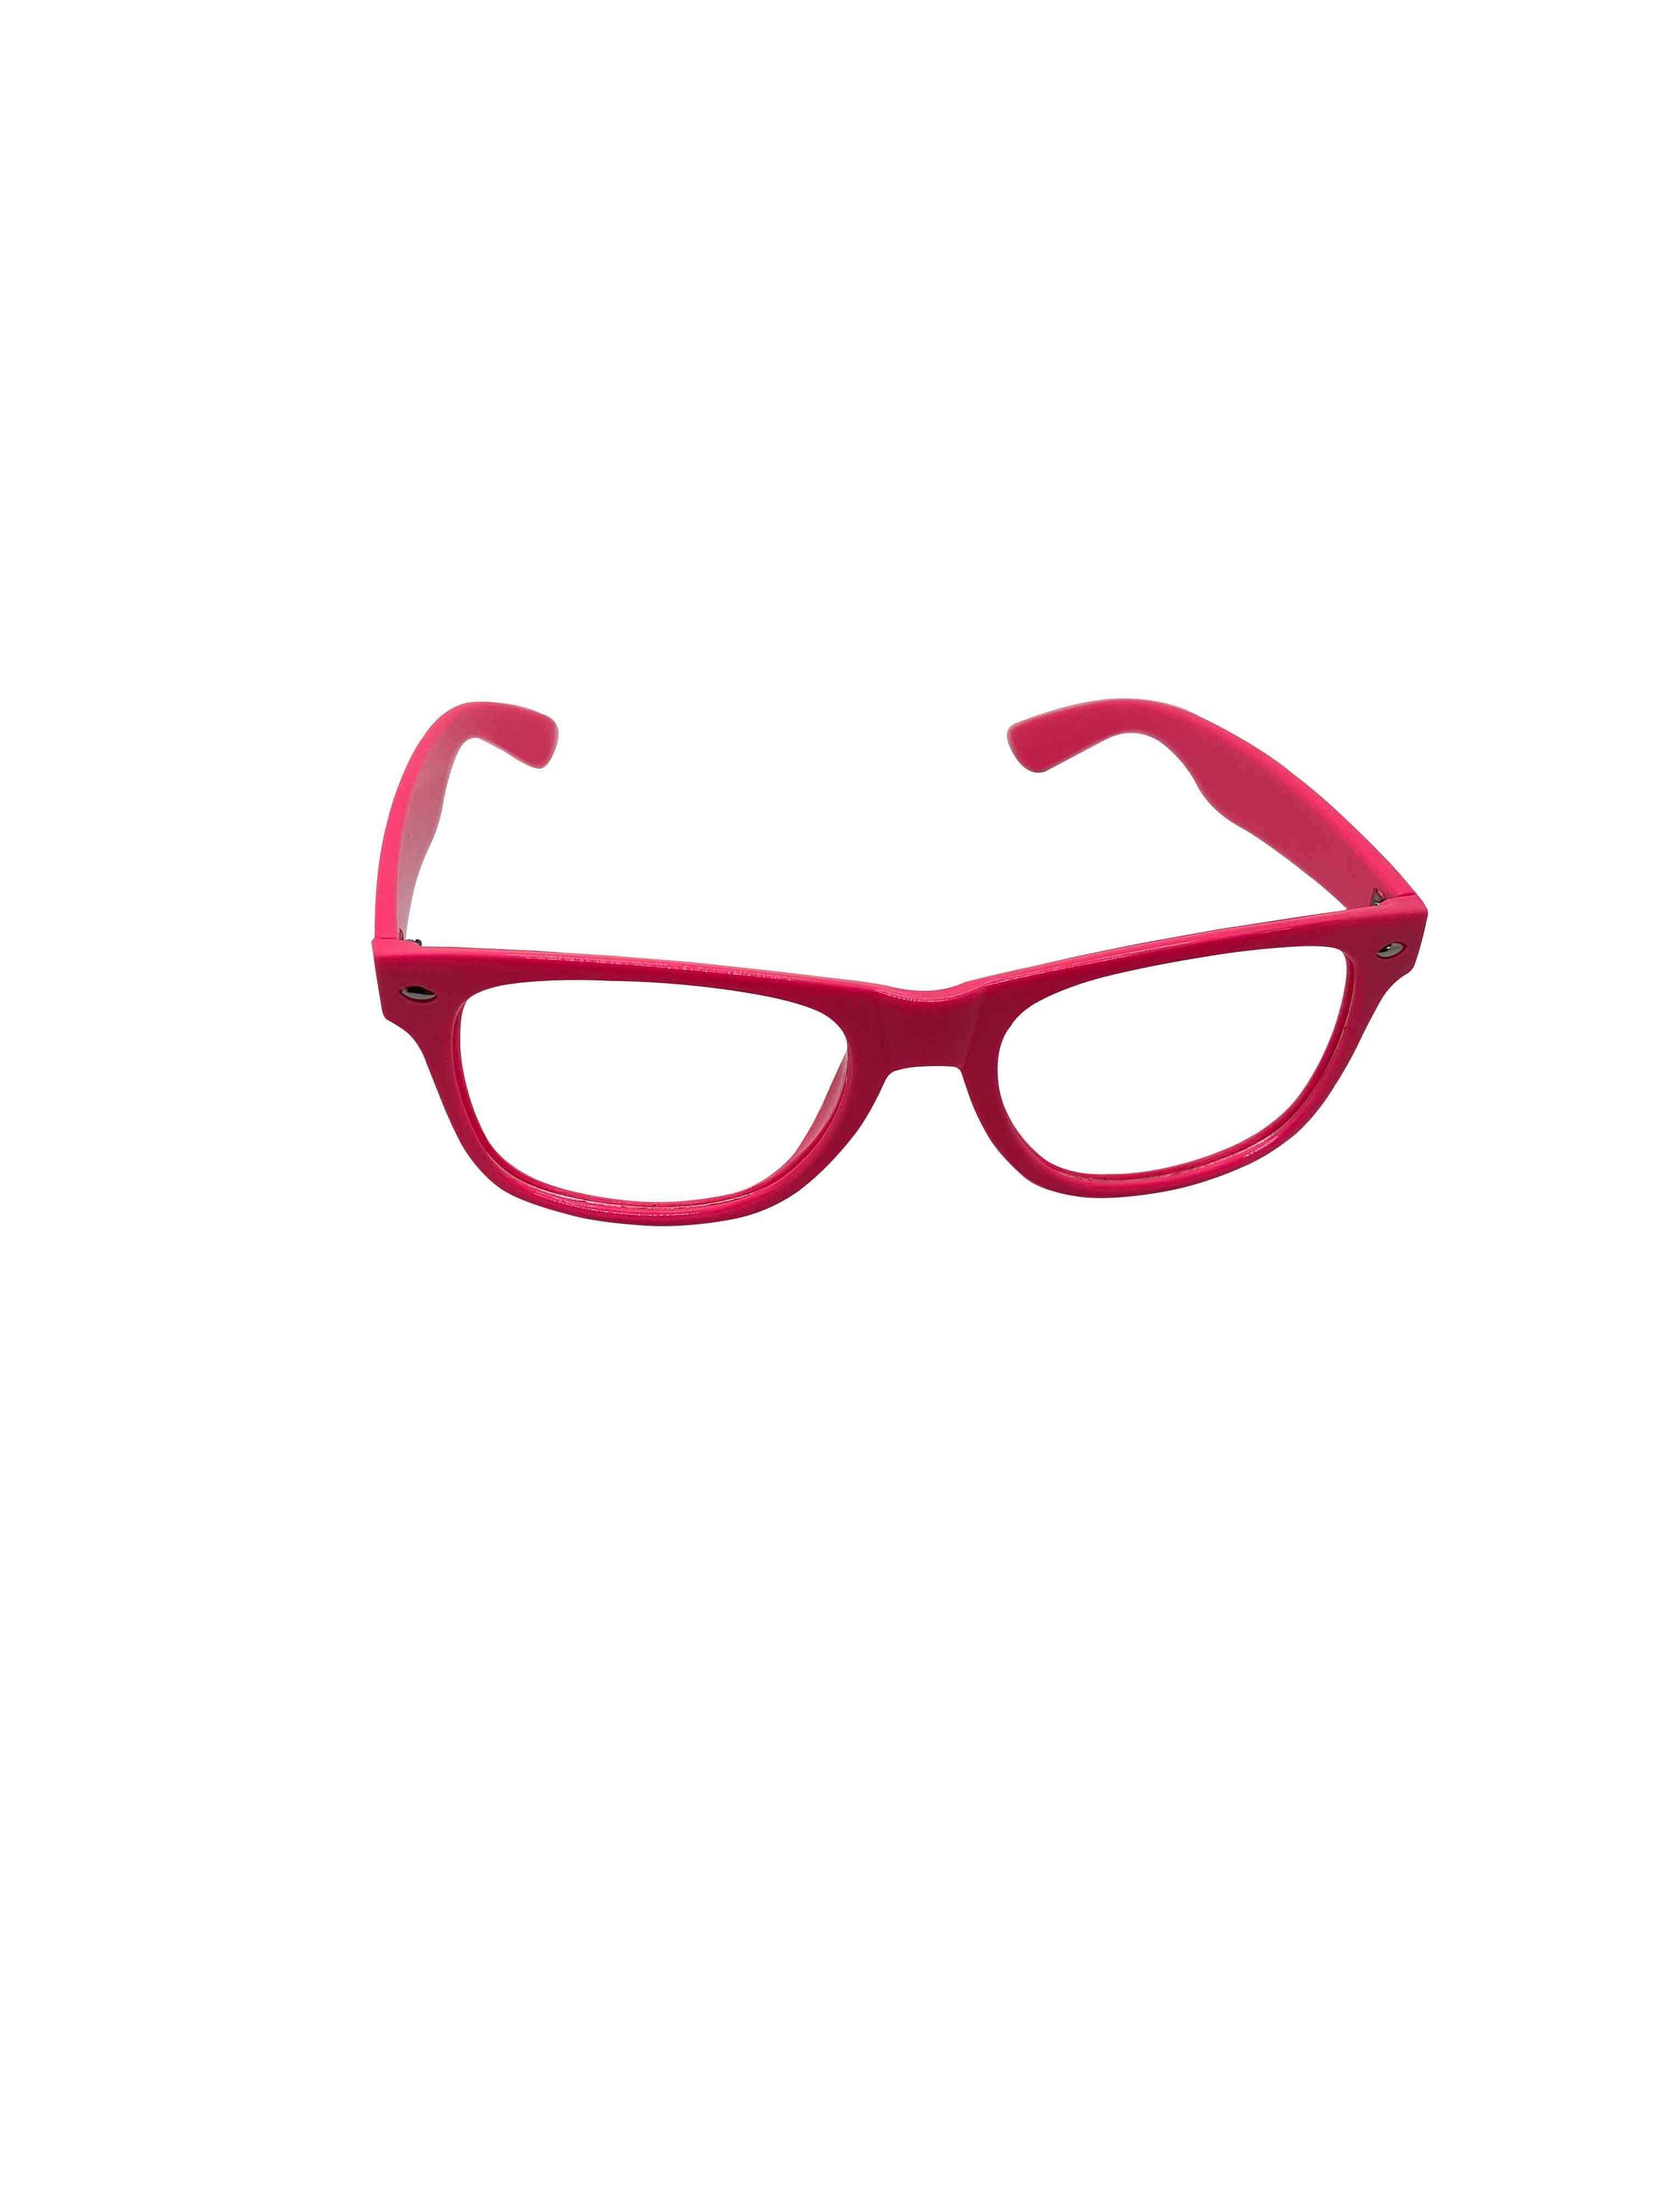 MOJO-EYES Perception Enhancing Glasses - High Powered Organics